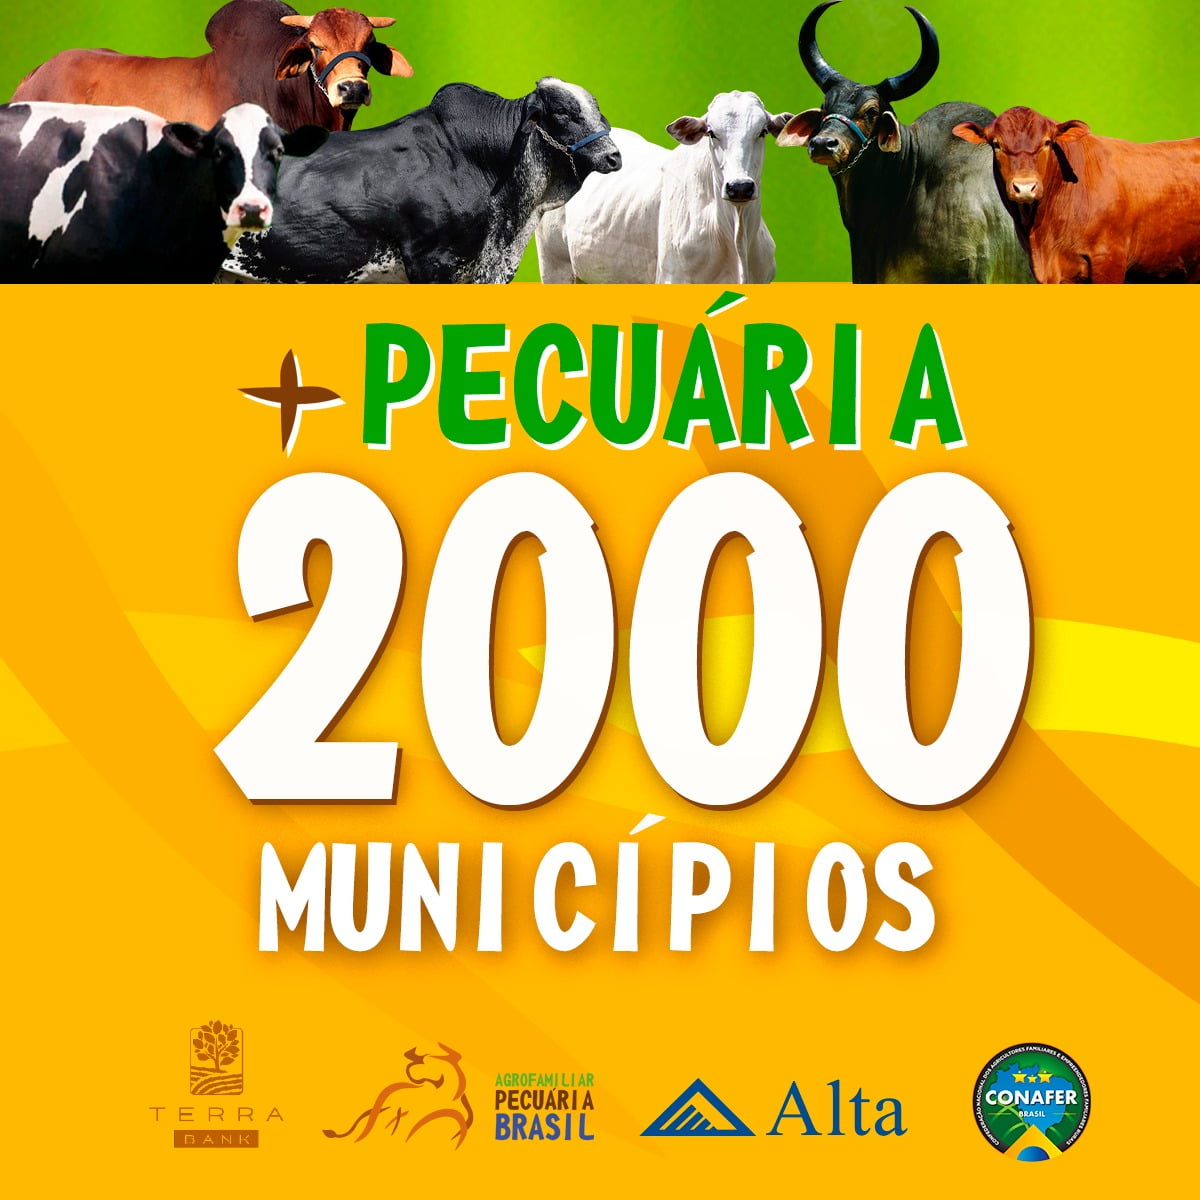 +PECUÁRIA 2000: lançamentos online de 14 de outubro selam a marca de 2 mil cidades atendidas pelo maior programa da pecuária brasileira